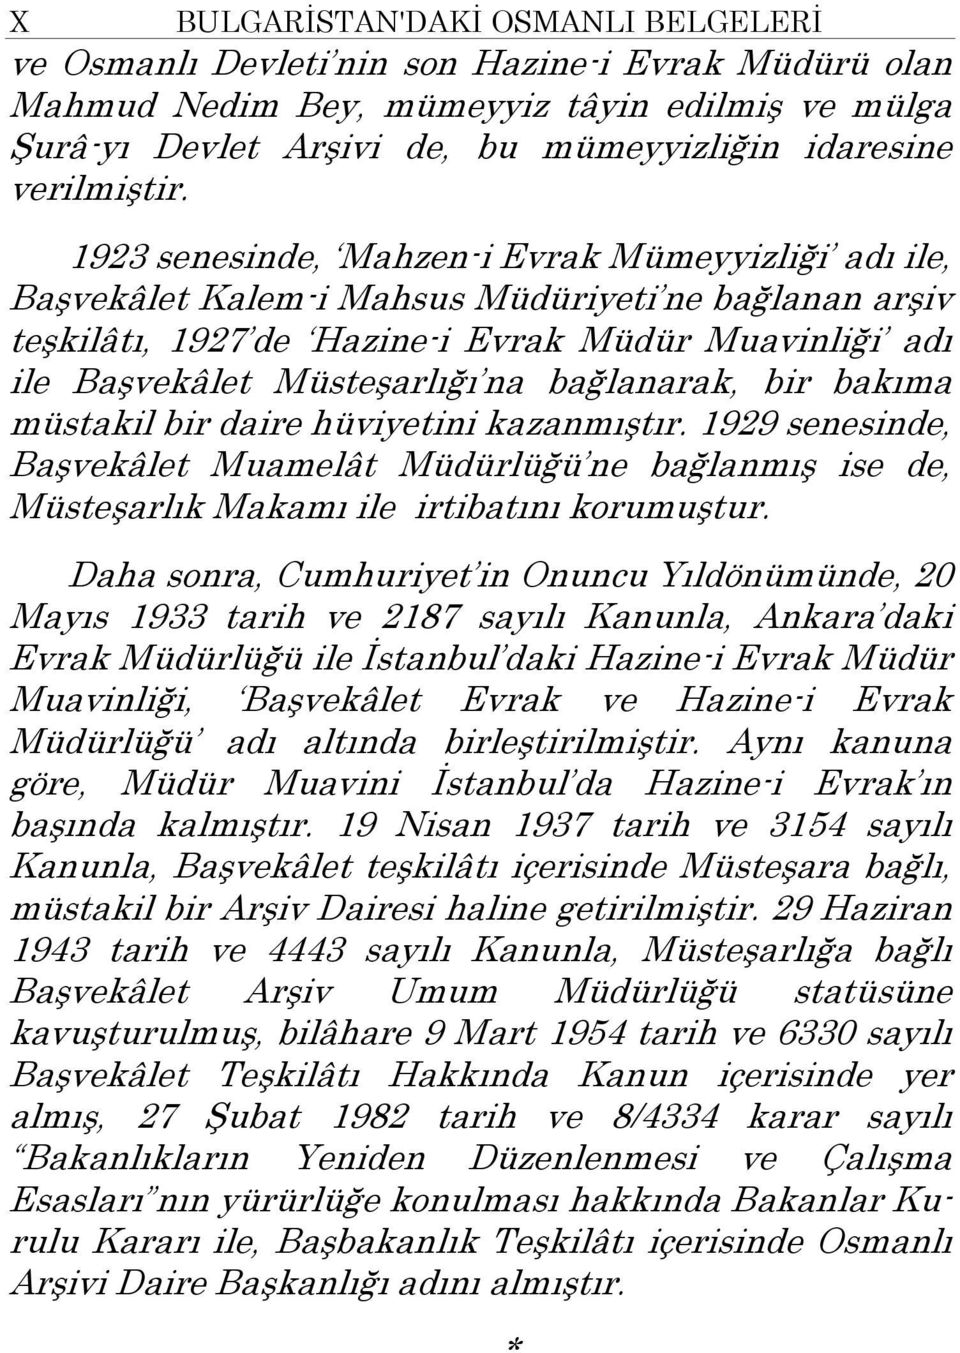 1923 senesinde, Mahzen-i Evrak Mümeyyizliği adı ile, Başvekâlet Kalem-i Mahsus Müdüriyeti ne bağlanan arşiv teşkilâtı, 1927 de Hazine-i Evrak Müdür Muavinliği adı ile Başvekâlet Müsteşarlığı na